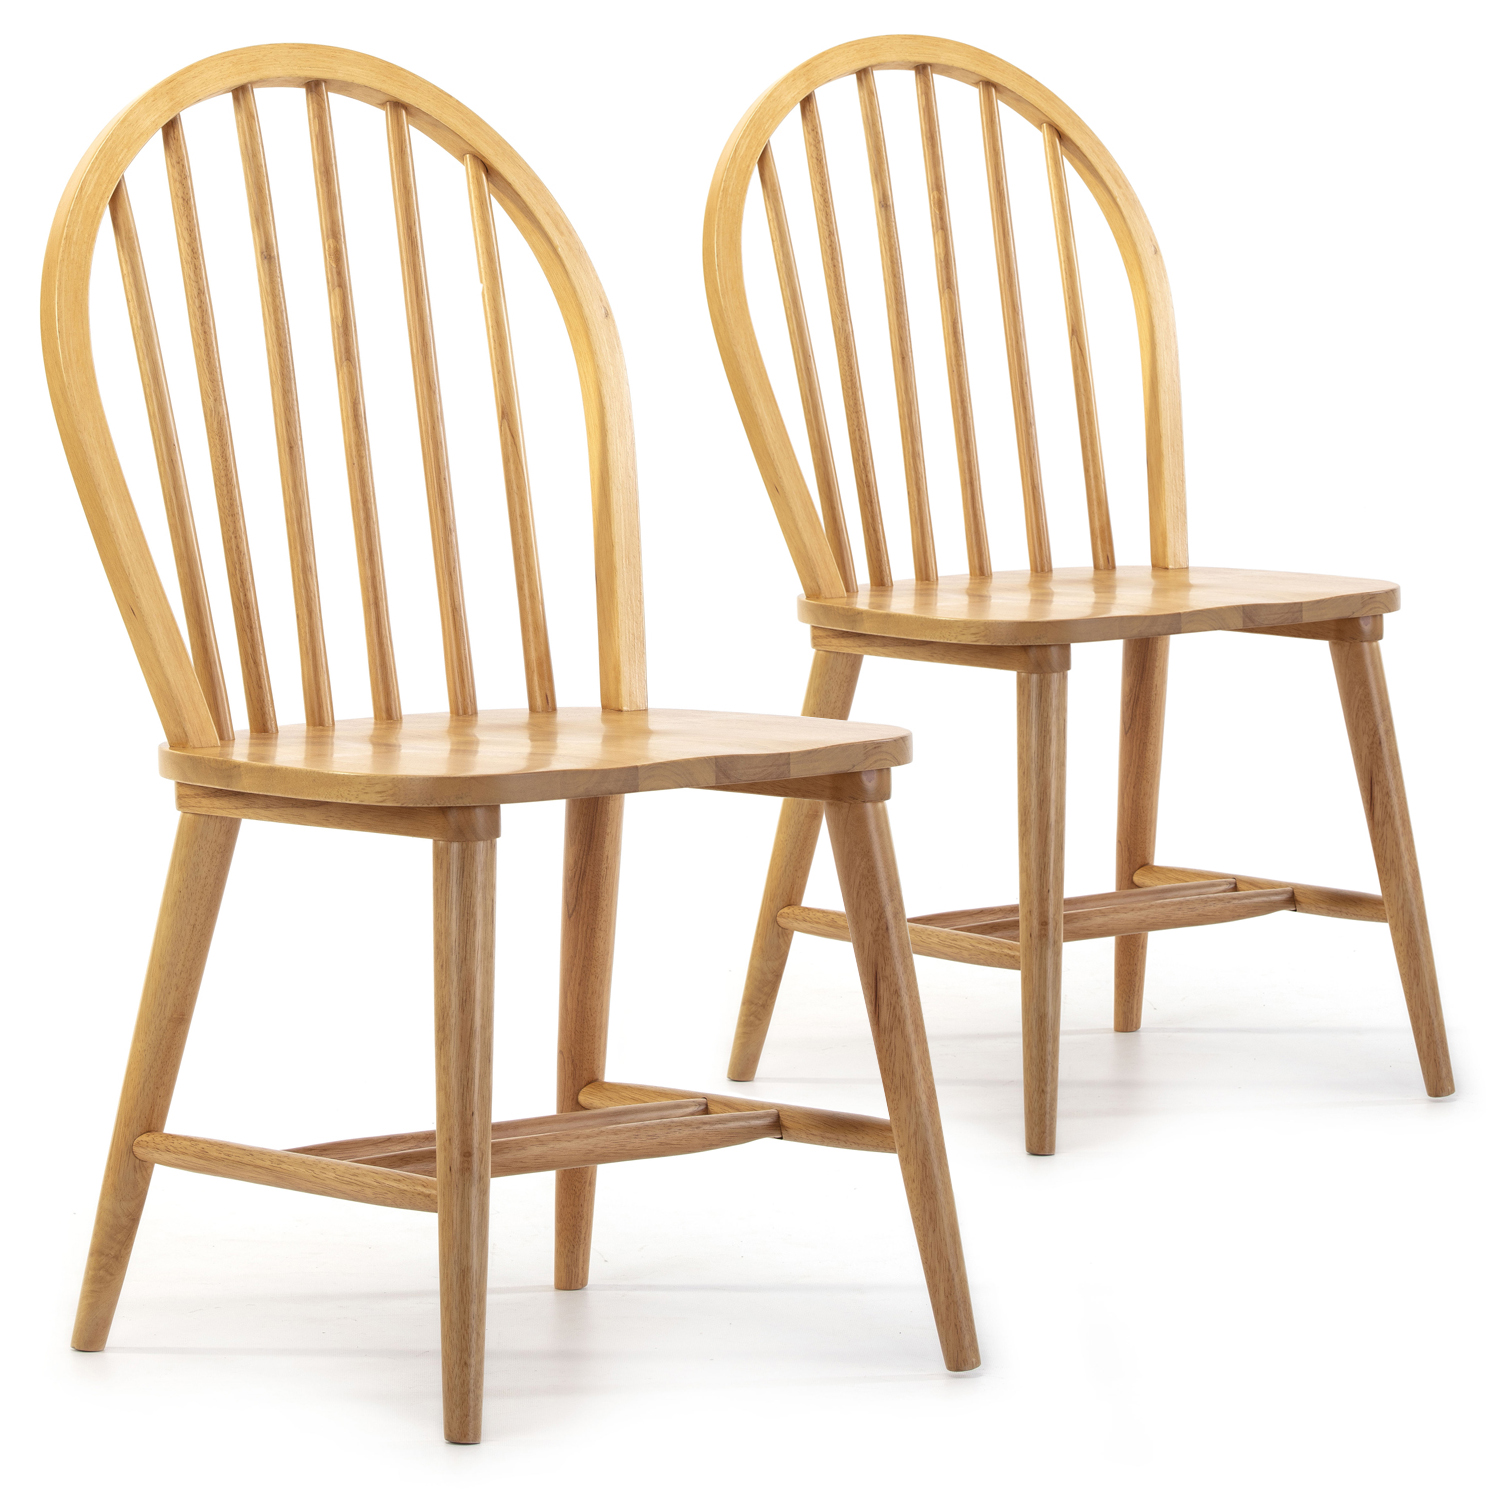 Pack 2 chaises couleur chêne, bois massif, 48 cm x 48 cm x 92 cm